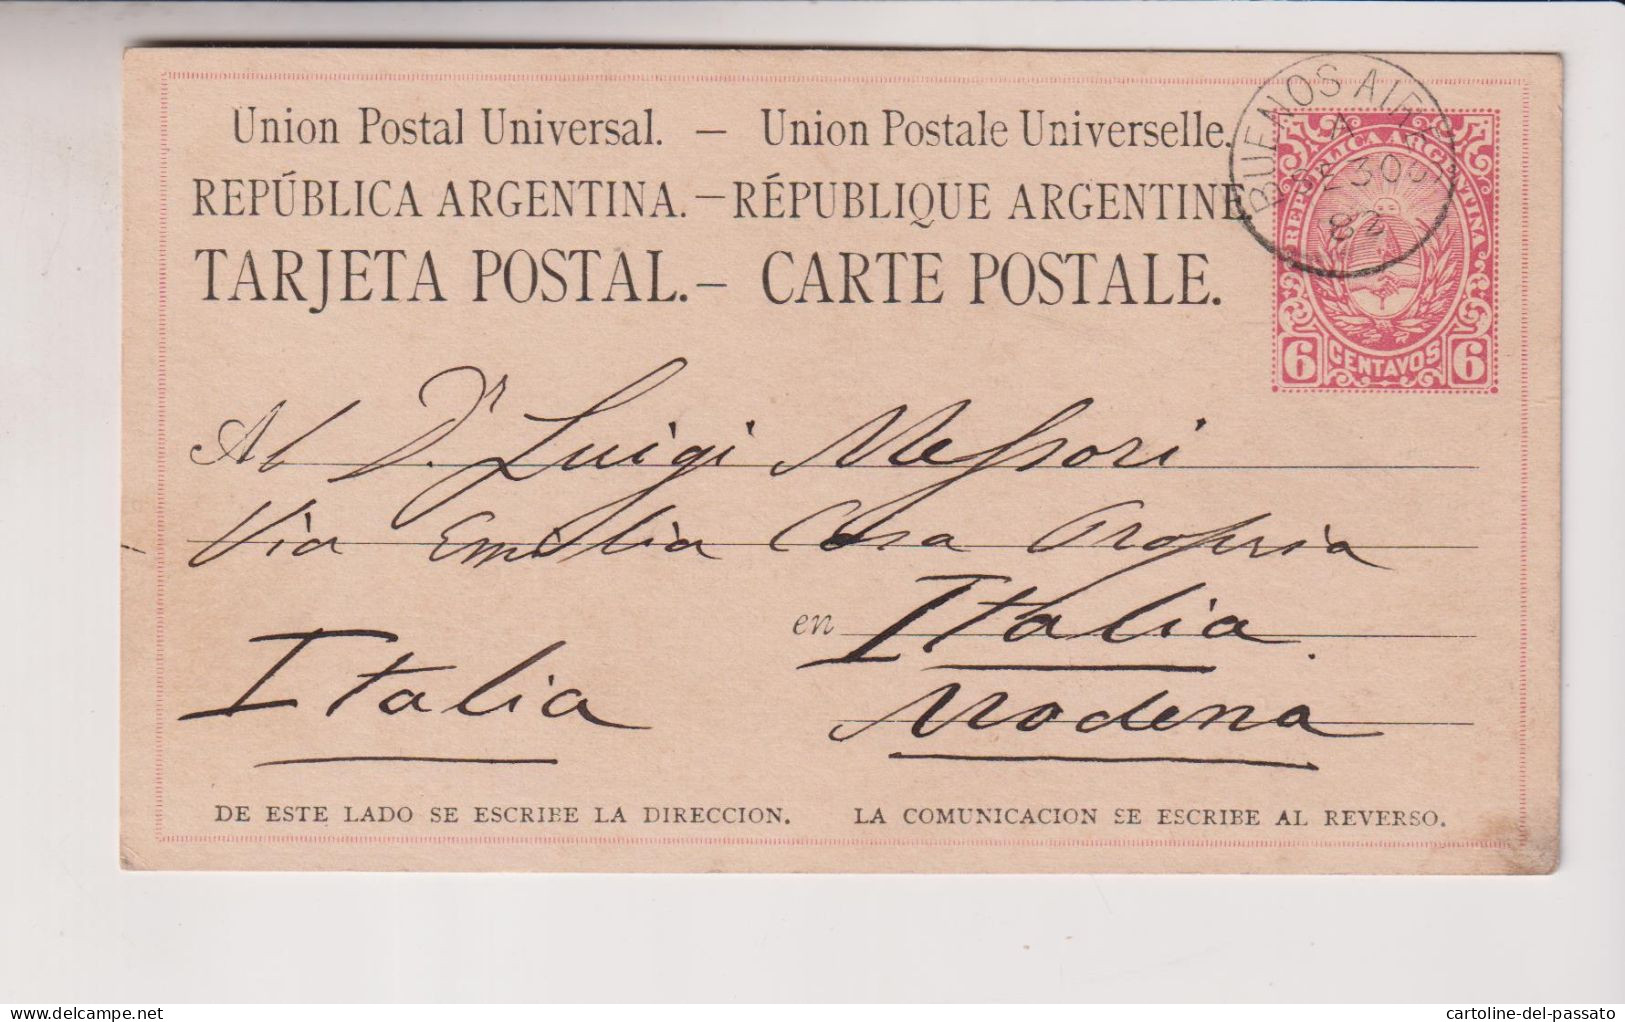 ARGENTINA STORIA POSTALE  30/10/1882 BUENOS AIRES PER MODENA  6 CENTAVOS - Corrientes (1856-1880)